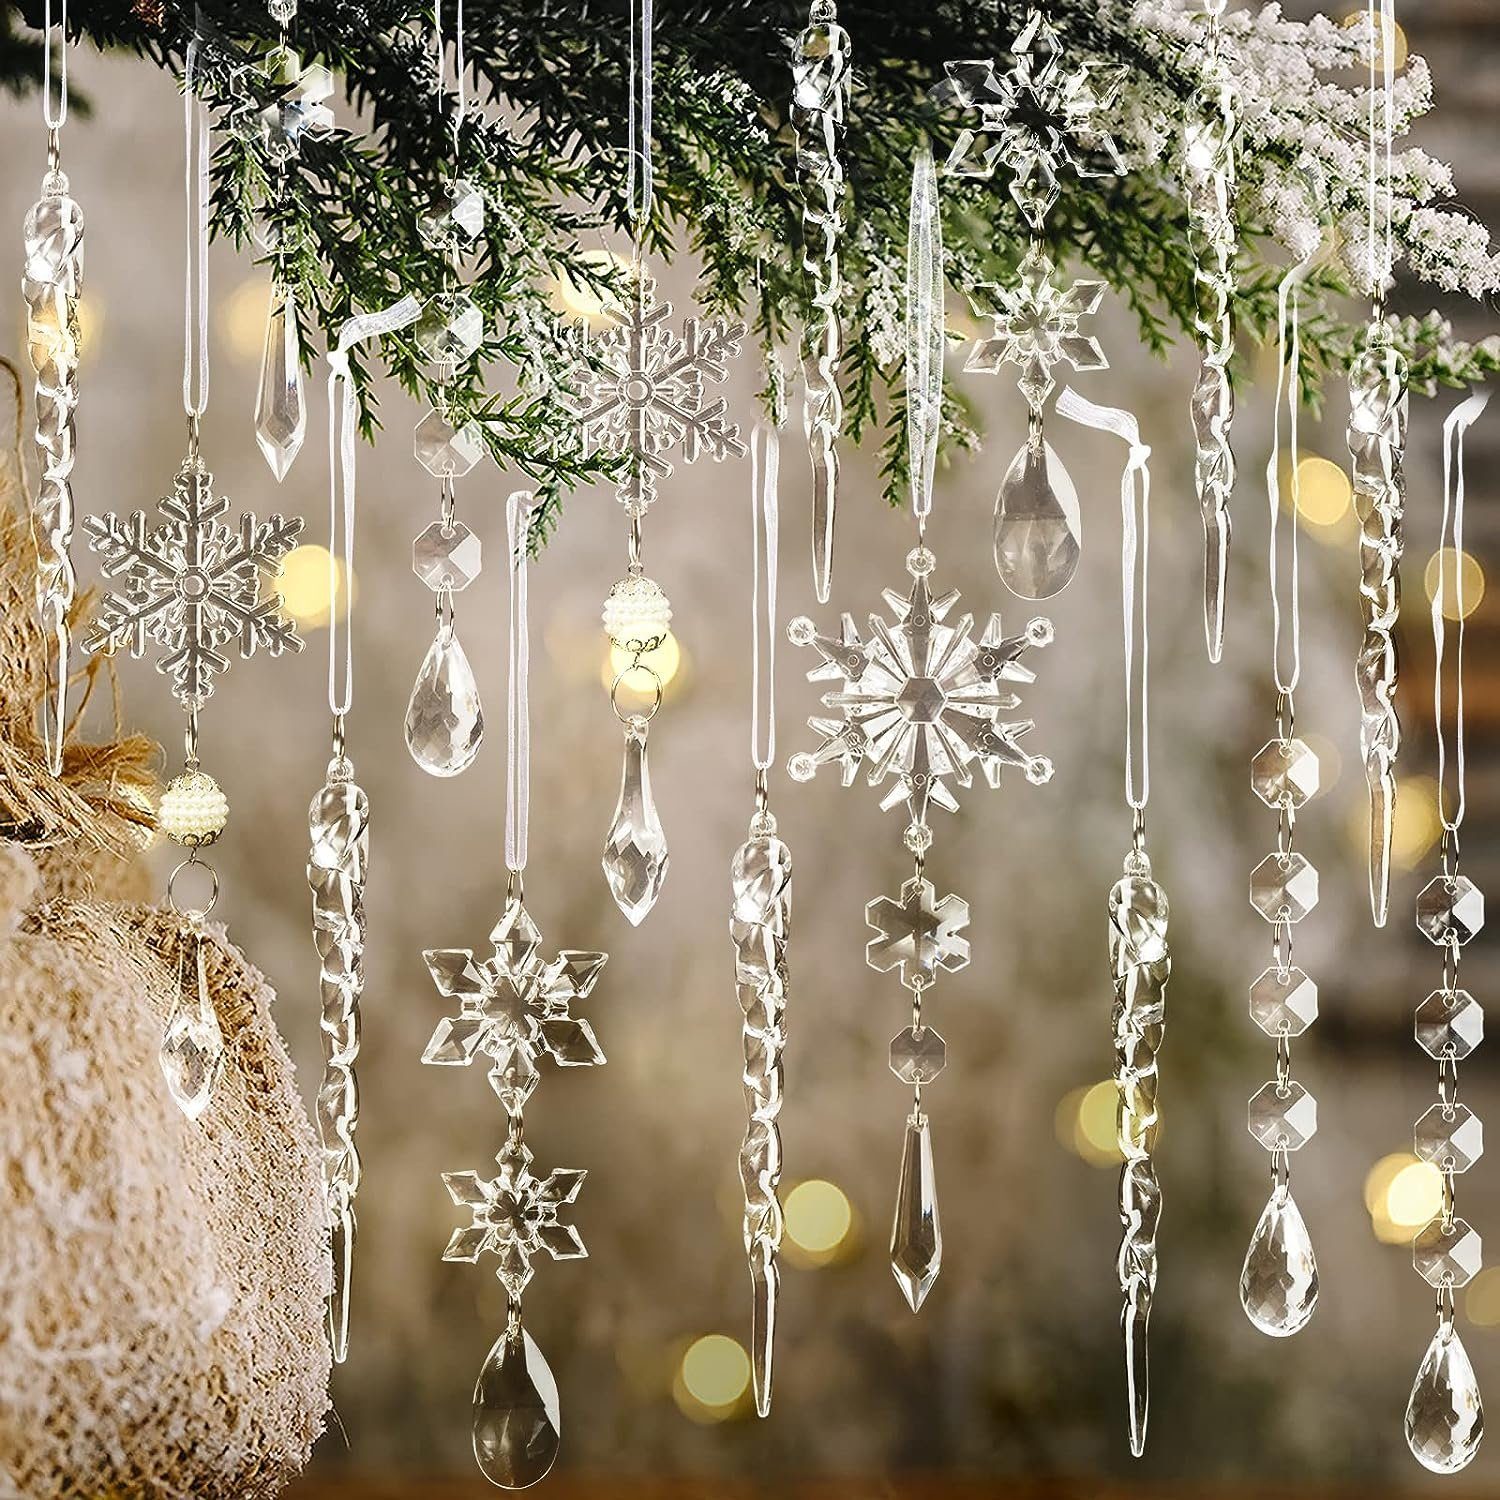 Tropfen Eiszapfen Weihnachtsbaumschmuck Stück Christbaumschmuck 10 Kristallornamente, Lamon hängende Weihnachtsschneeflocken transparent